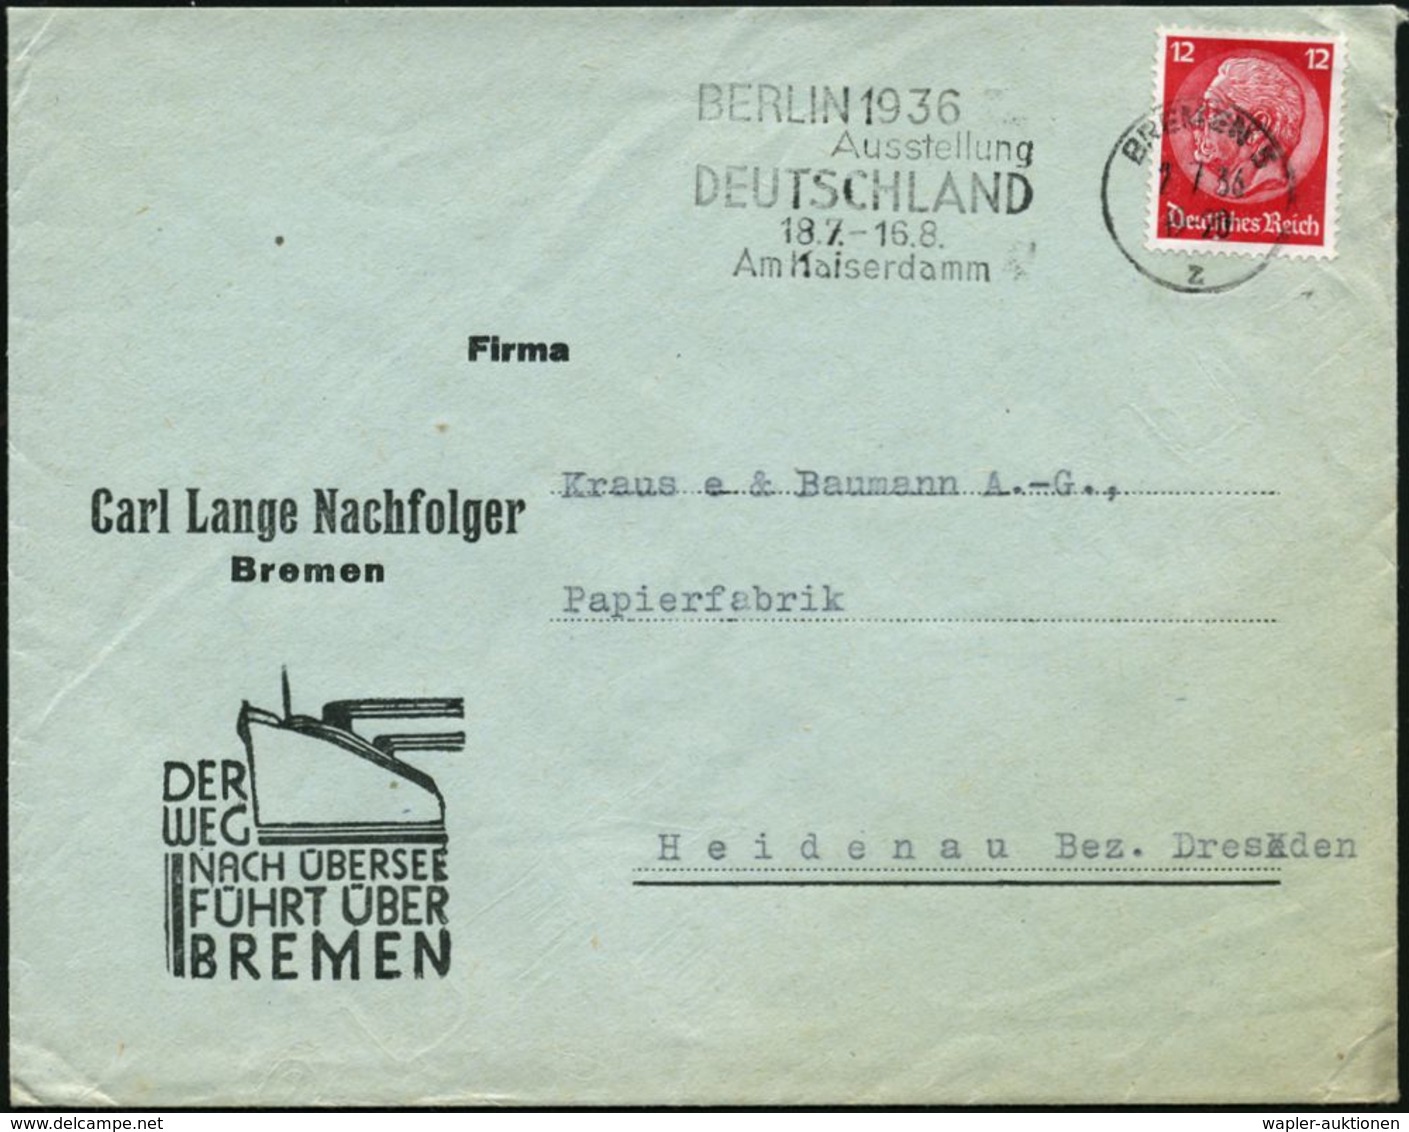 BREMEN 5/ Z/ BERLIN 1936/ Ausstellung/ DEUTSCHLAND/ 18.7.-16.8. 1936 (2.7.) Seltener MWSt Auf Reklame-Bf.: DER WEG NACH  - Ete 1936: Berlin